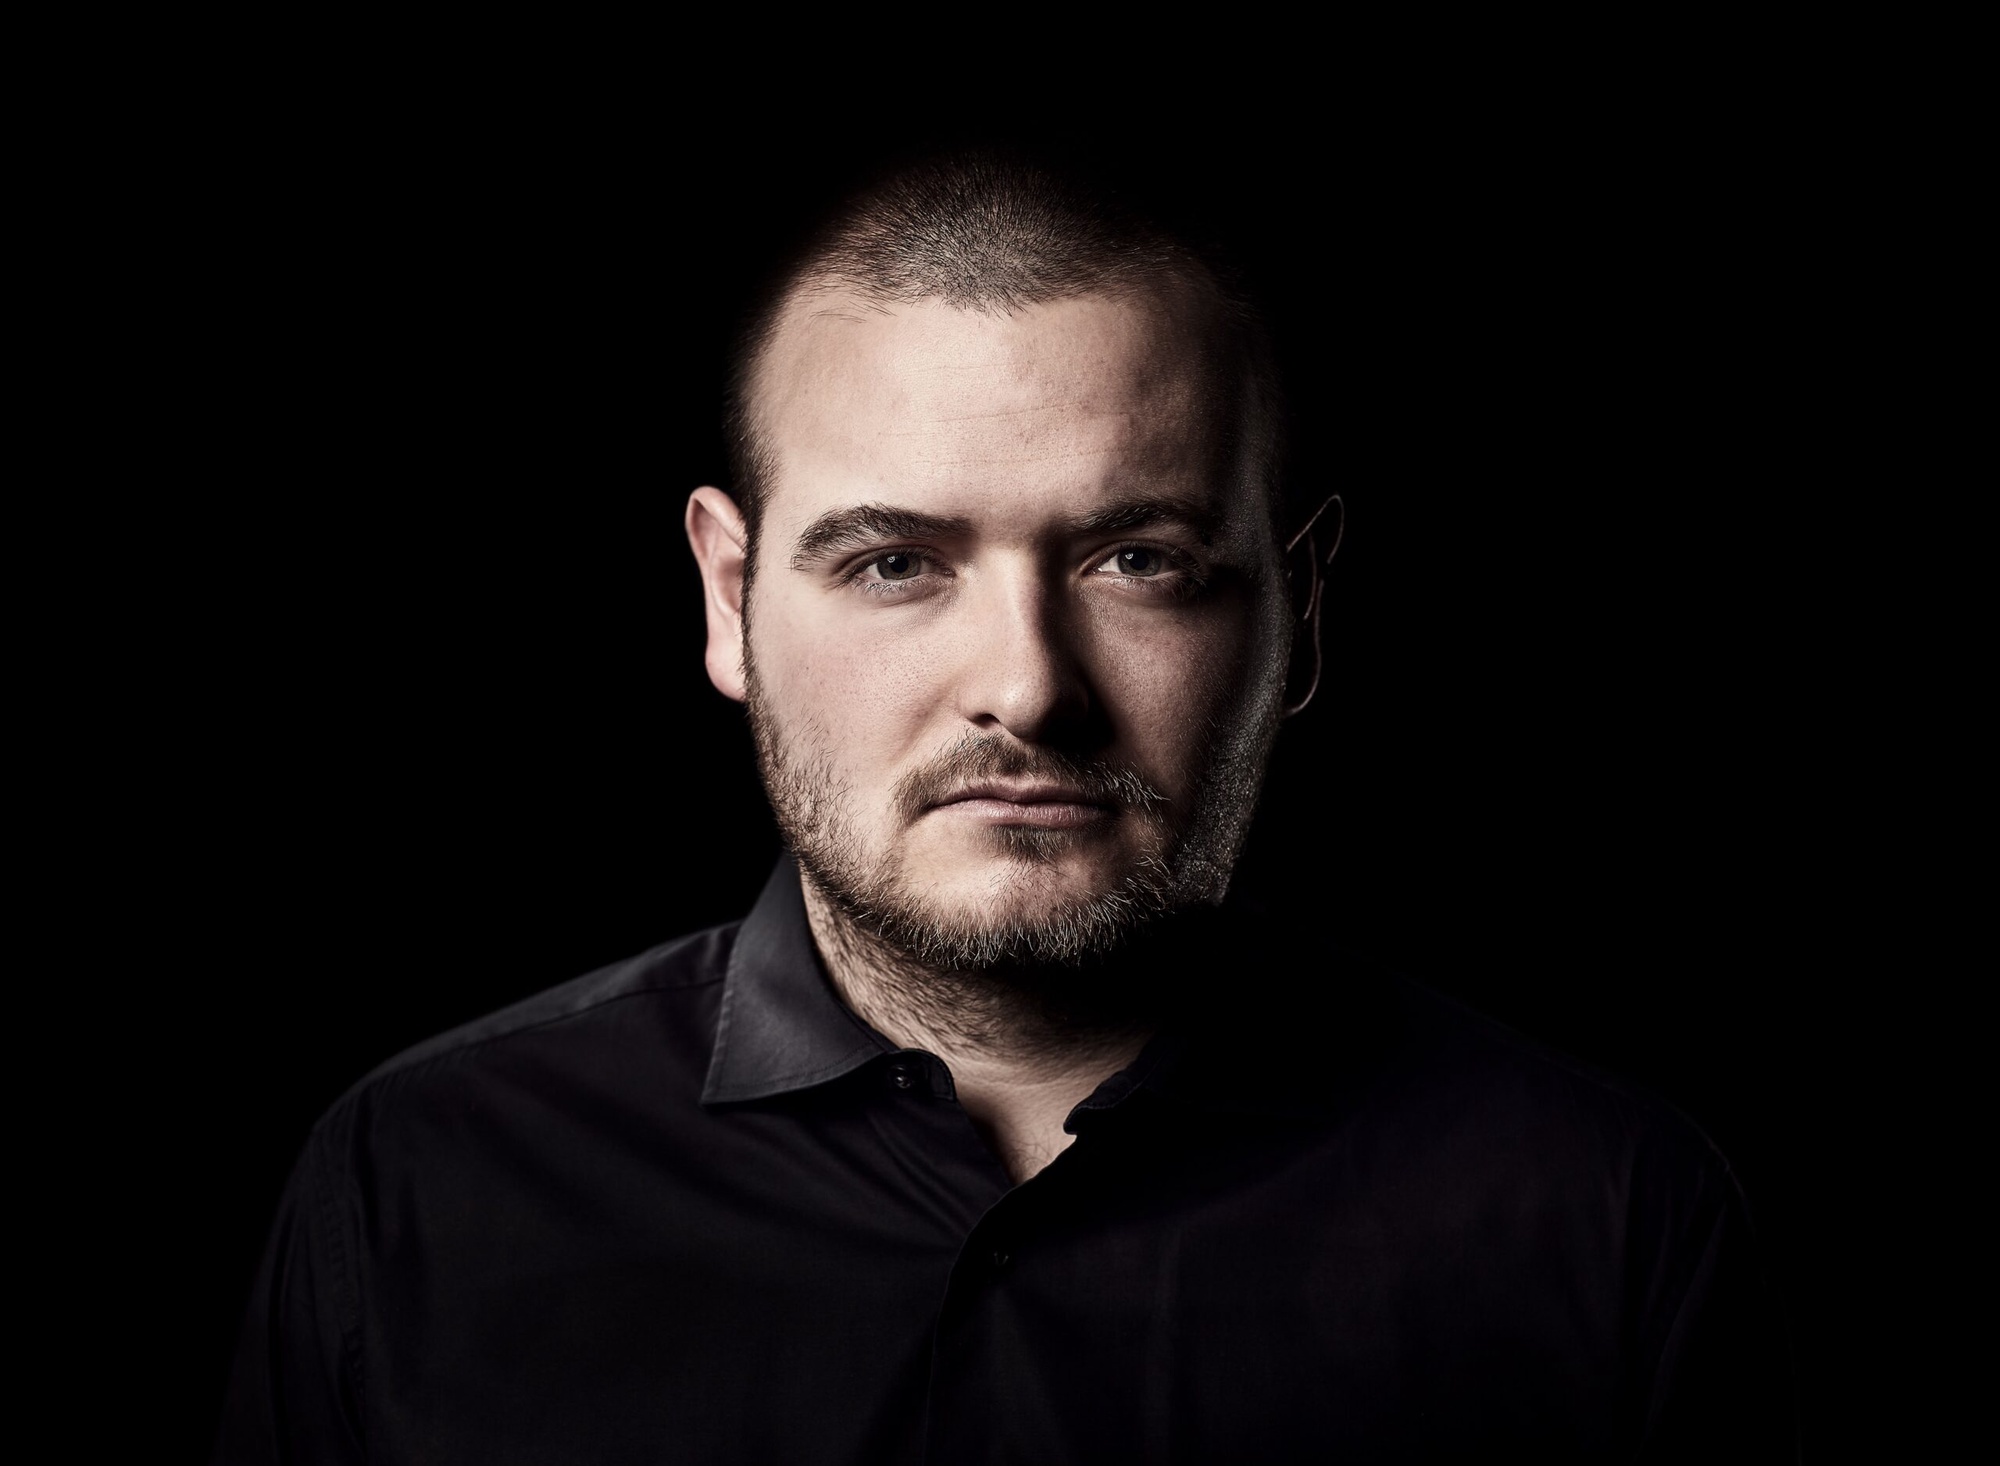 Portrait of Jonatan Männchen on black background